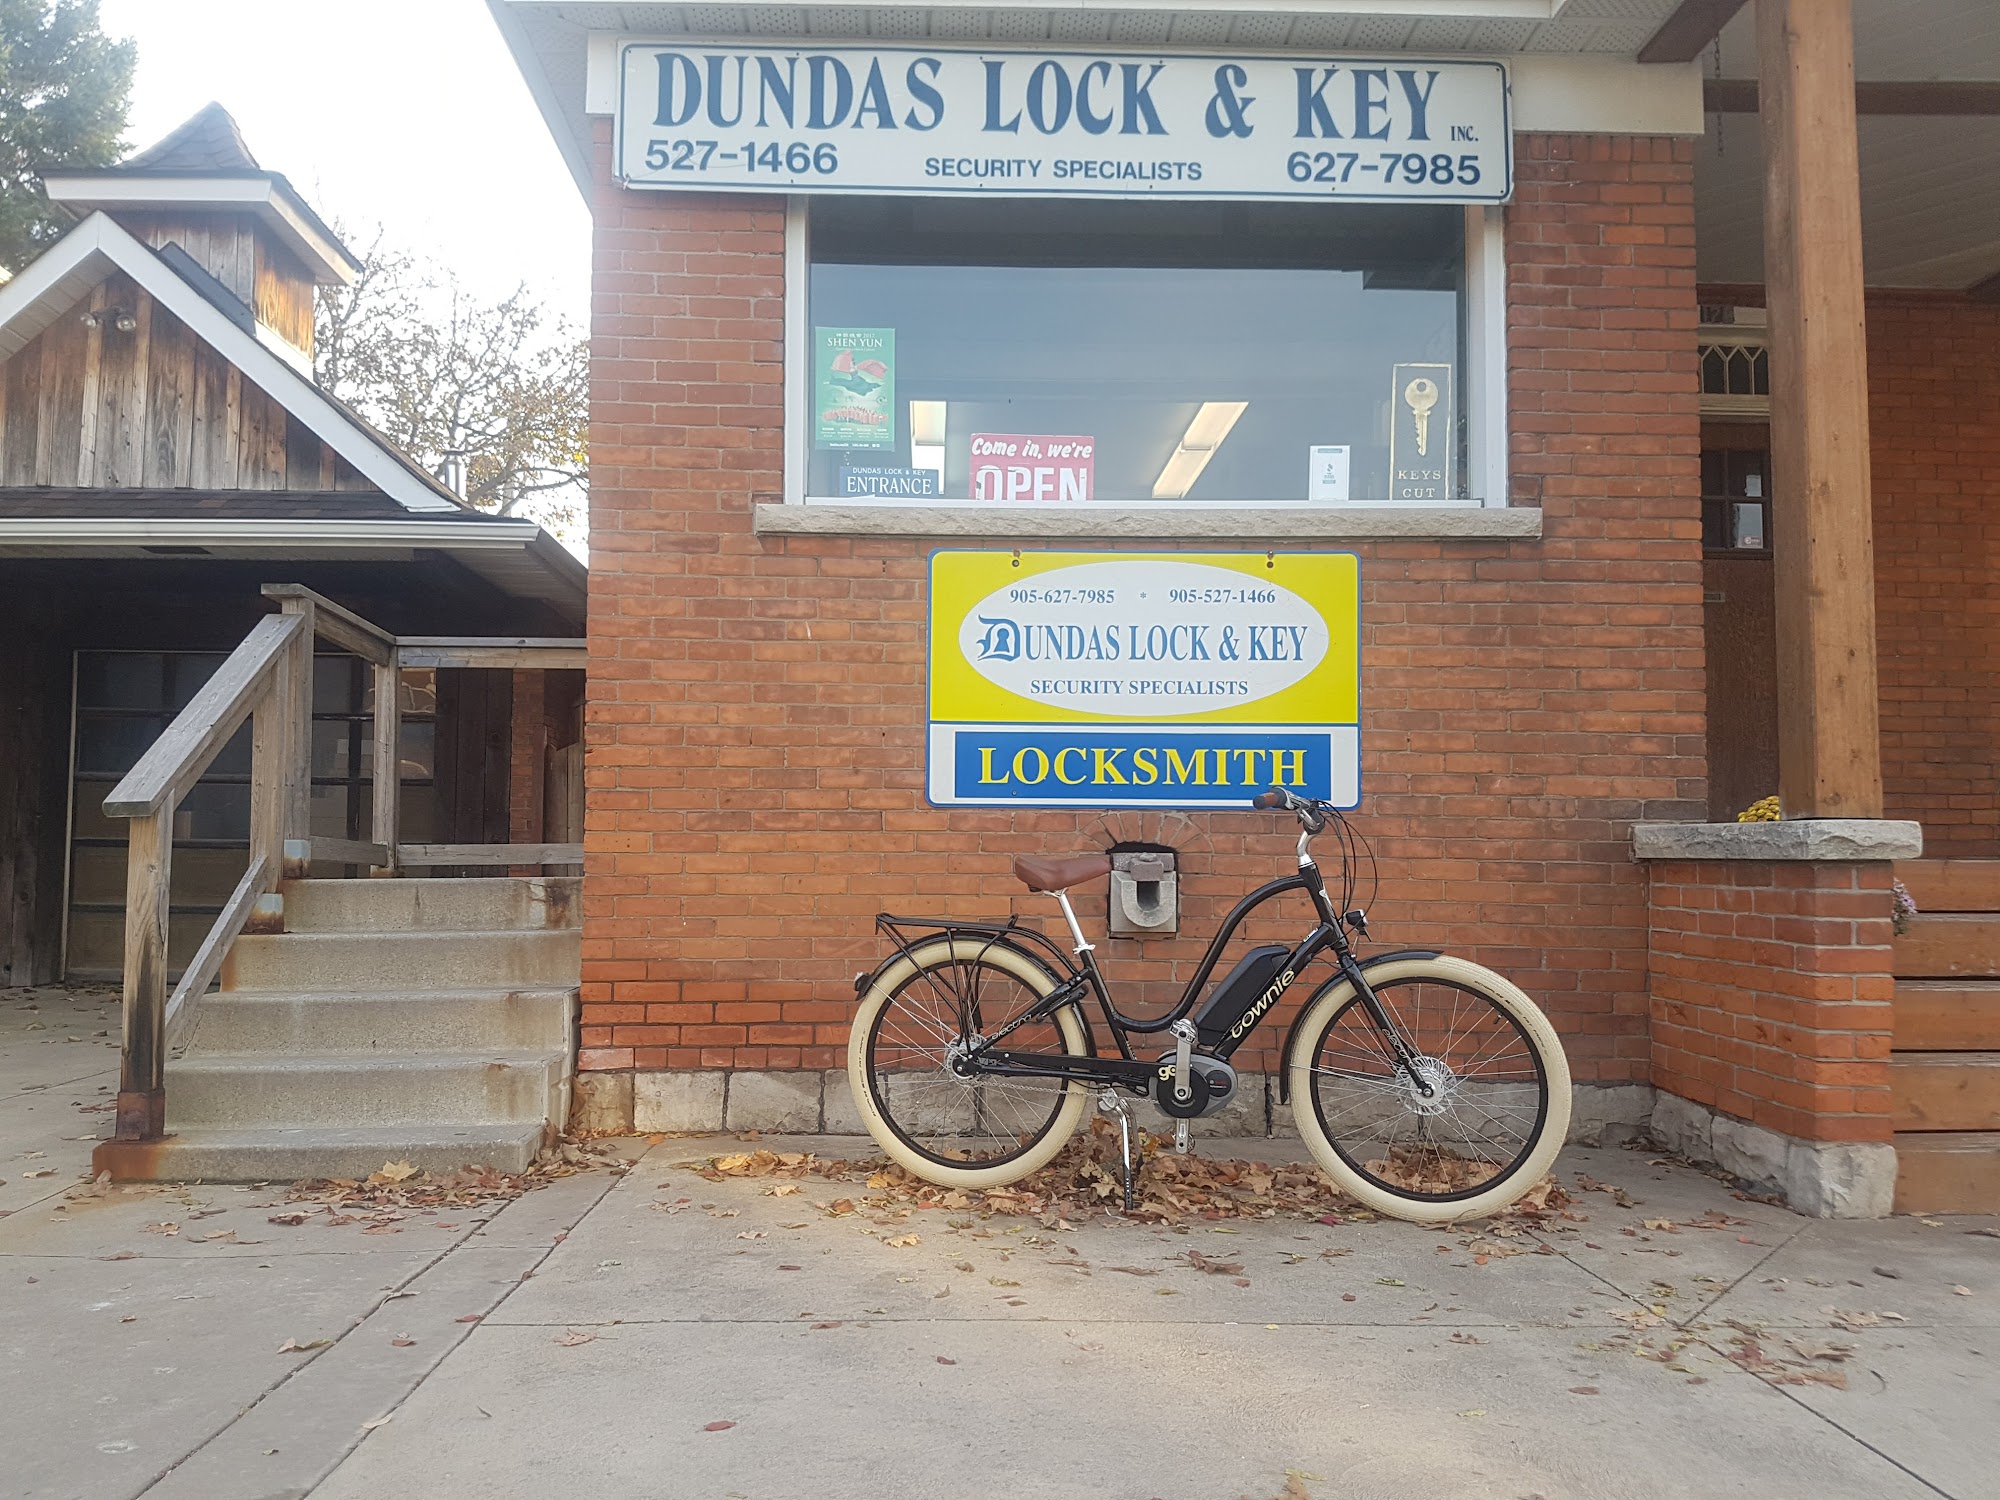 Dundas Lock & Key Inc 178 King St W, Dundas Ontario L9H 1V4